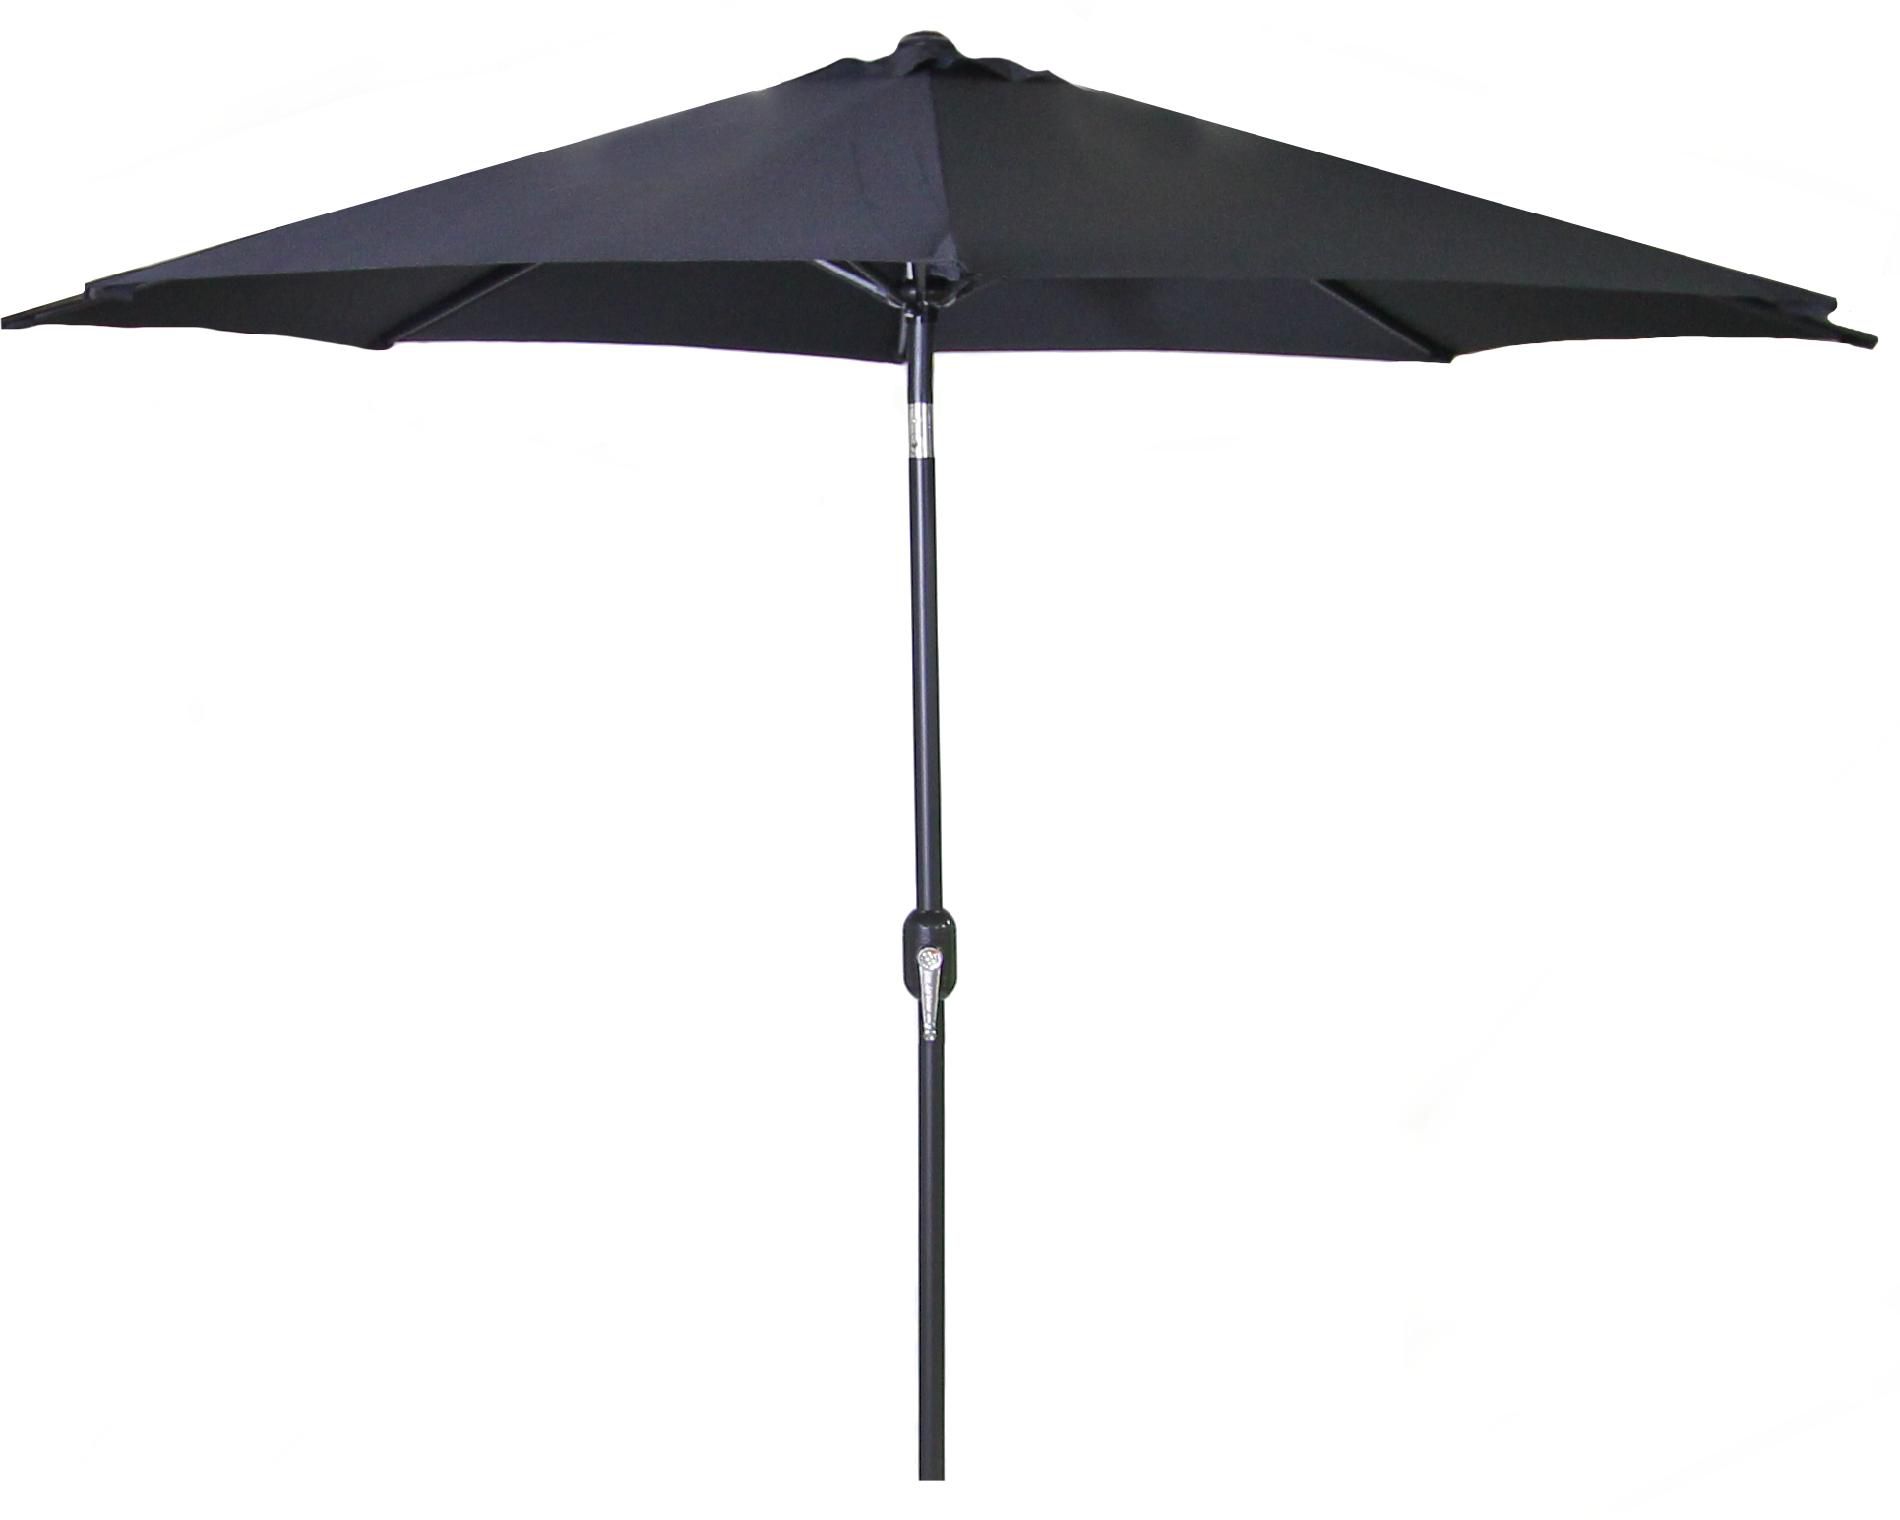 9' Steel Market Umbrella in Assorted colors